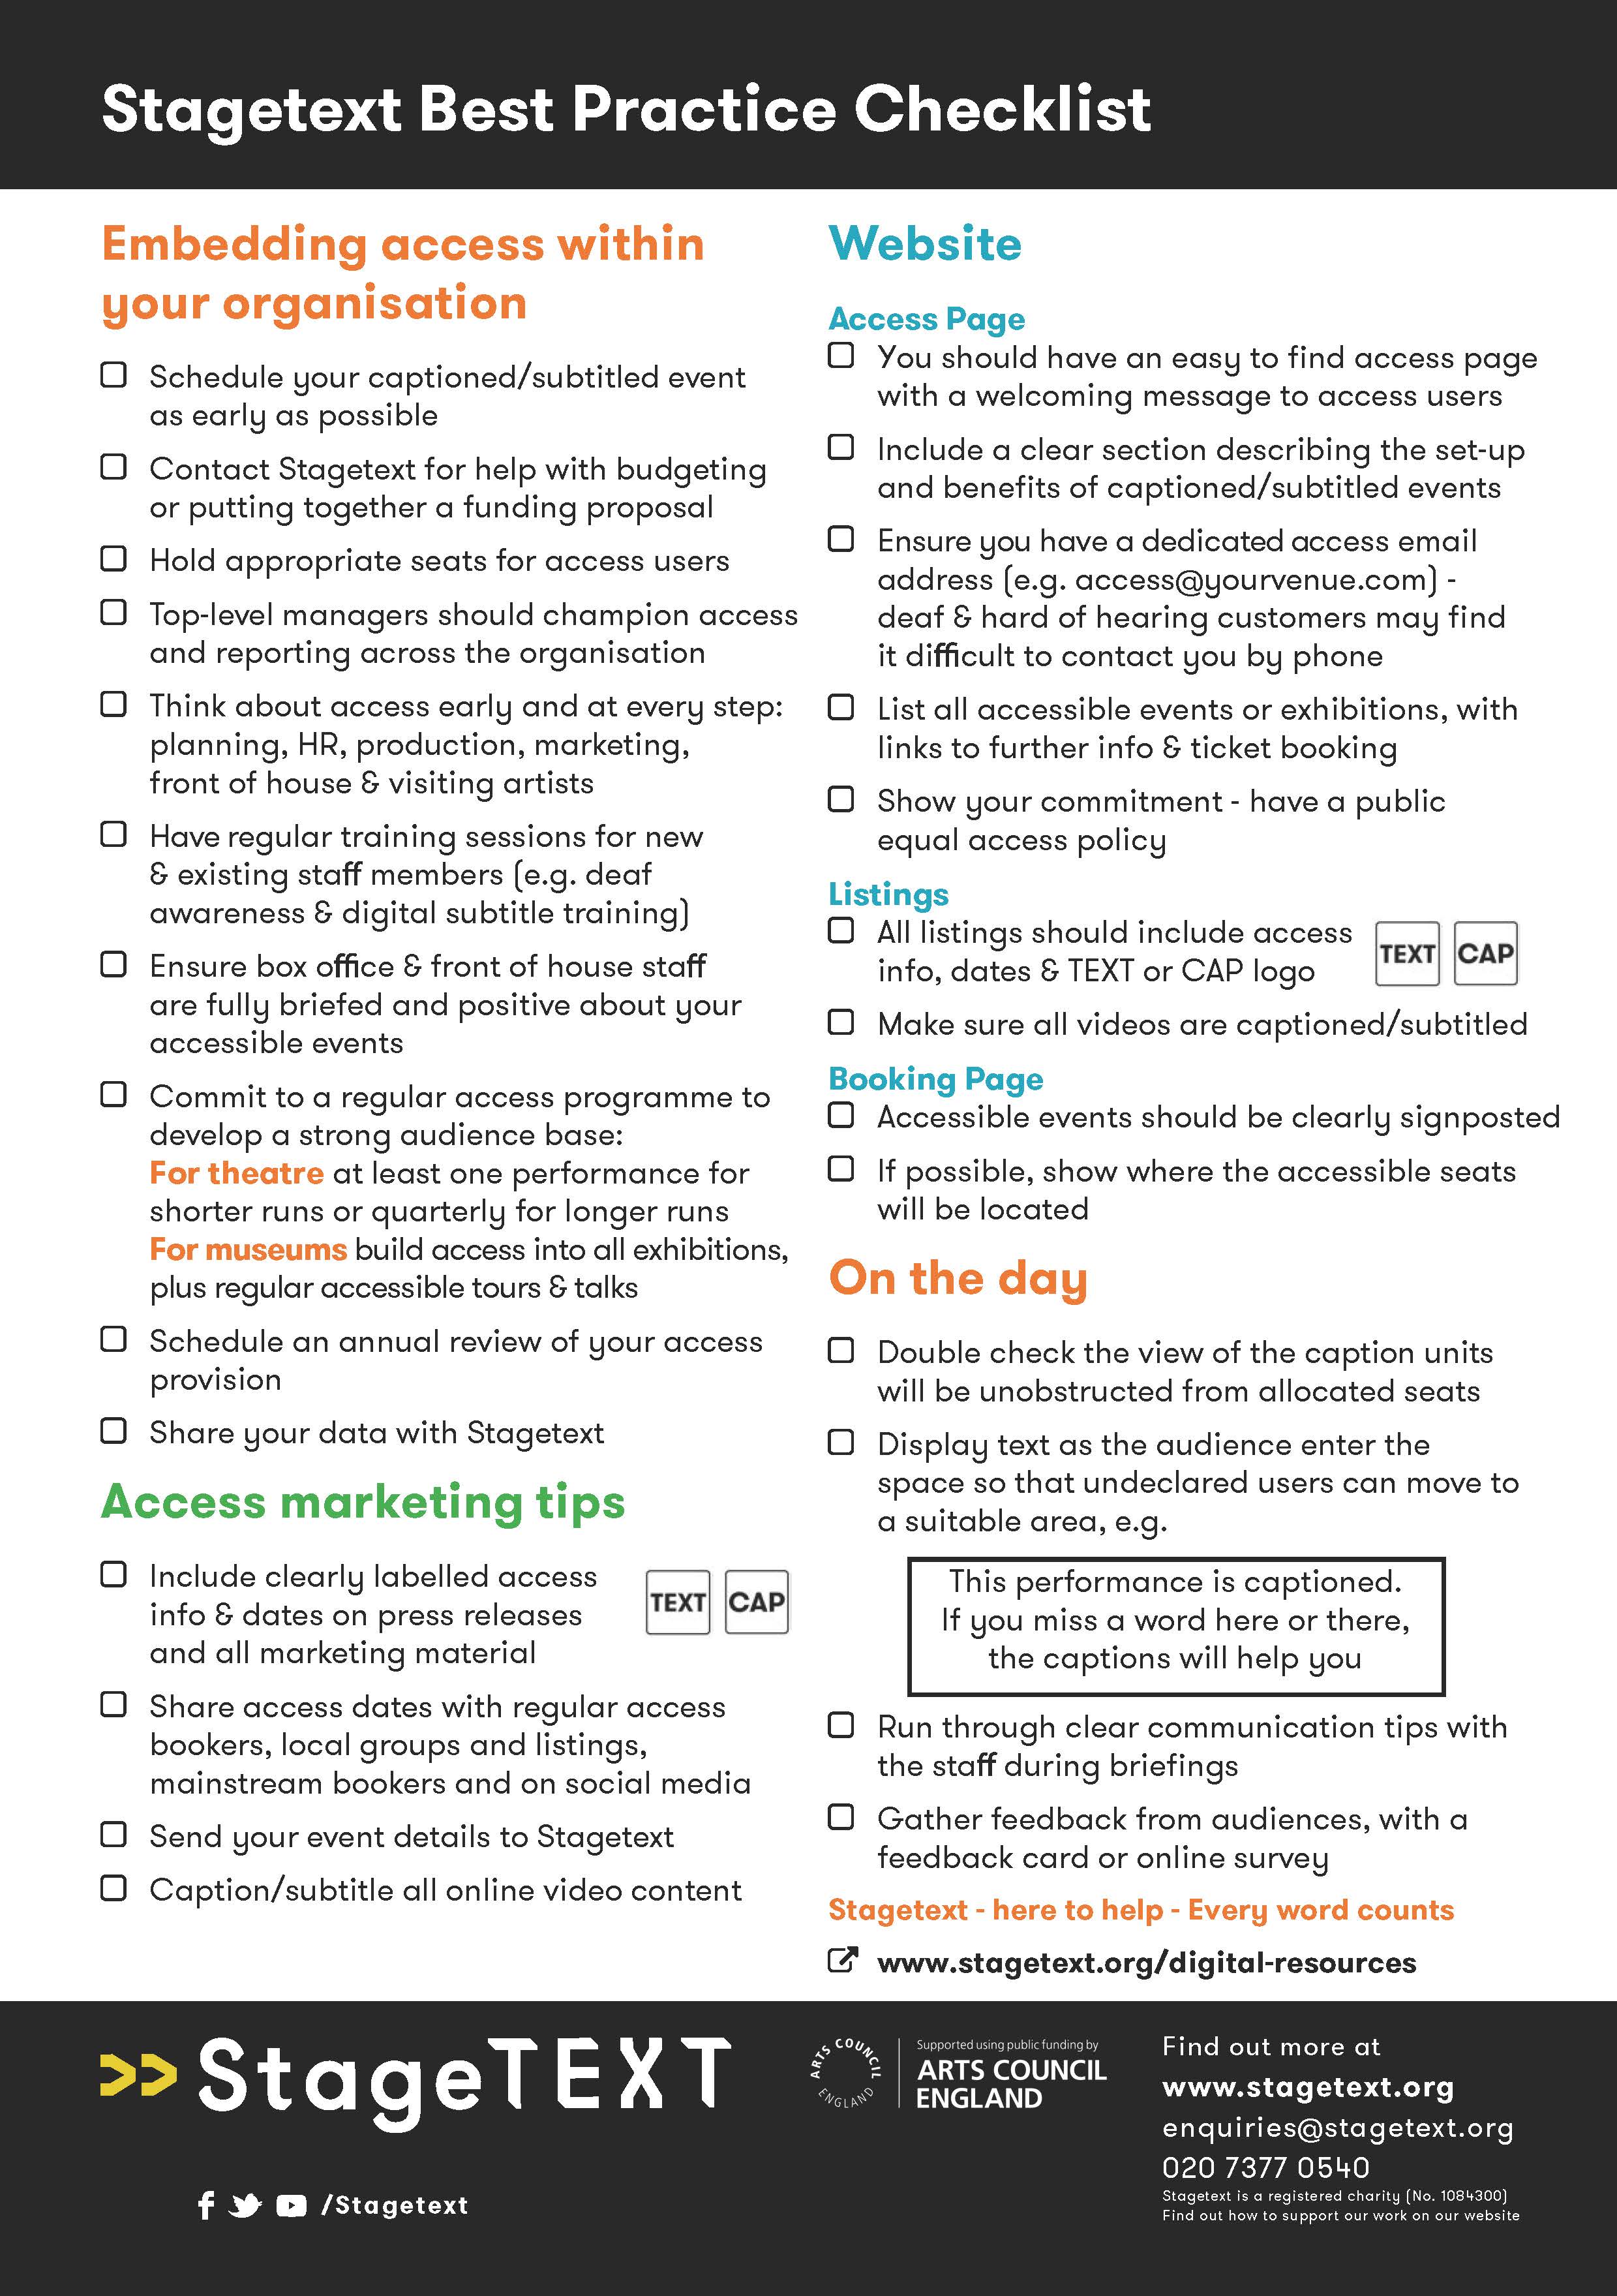 Stagetext's Best Practice Checklist